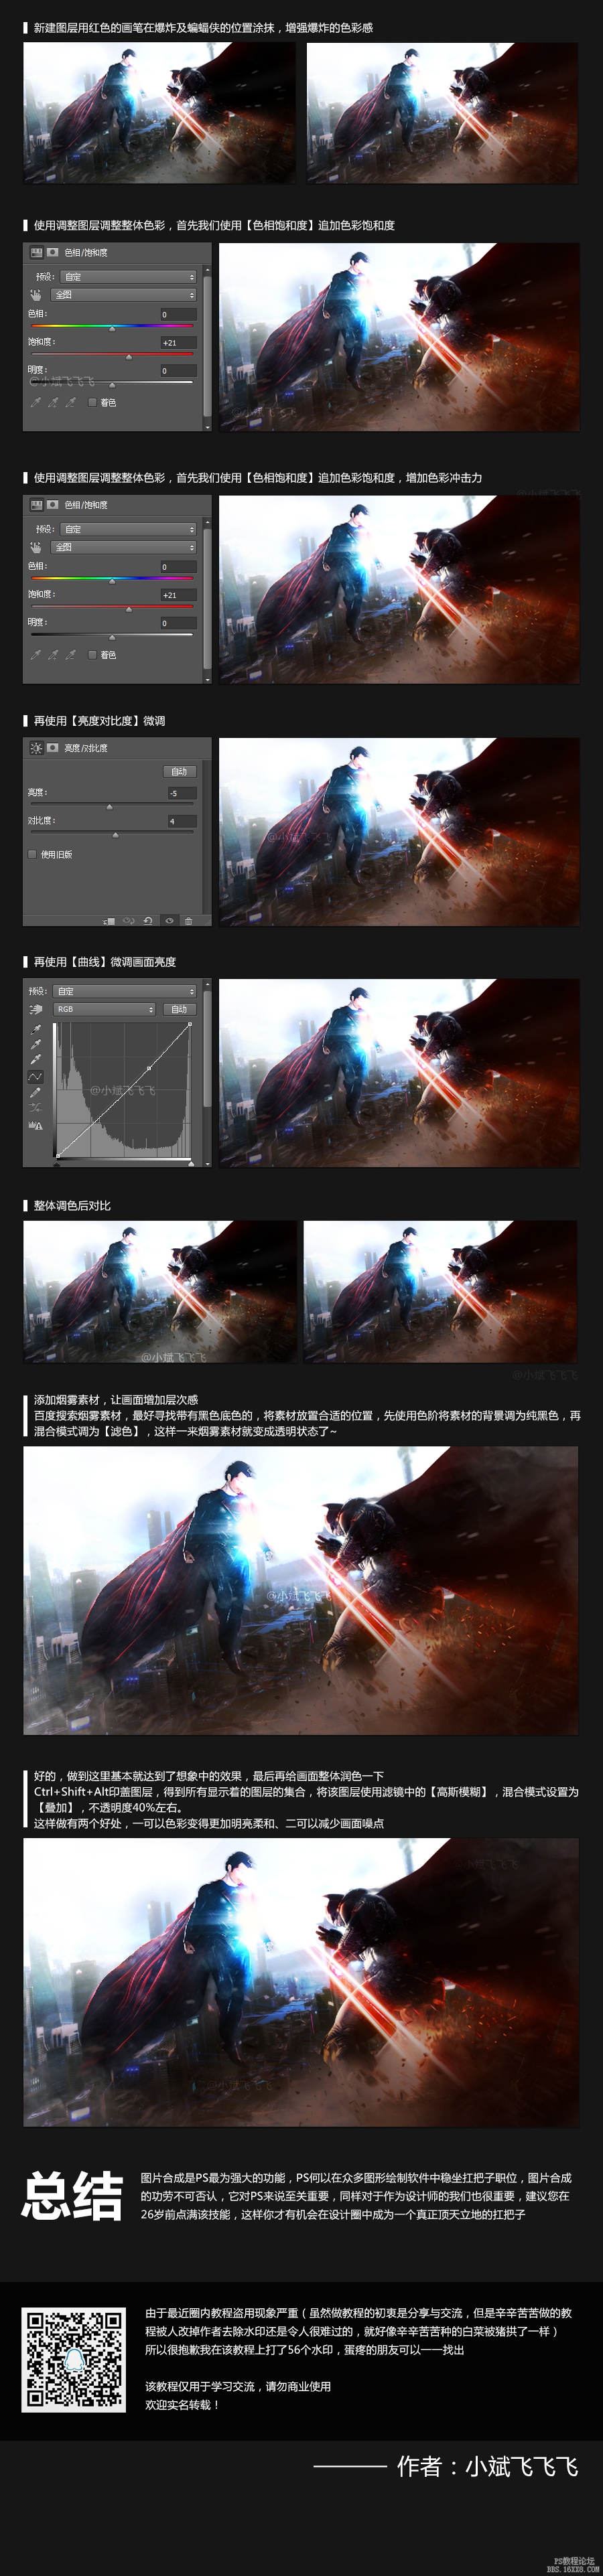 PS合成超人大战蝙蝠侠场景—超详细教程(2)插图(4)